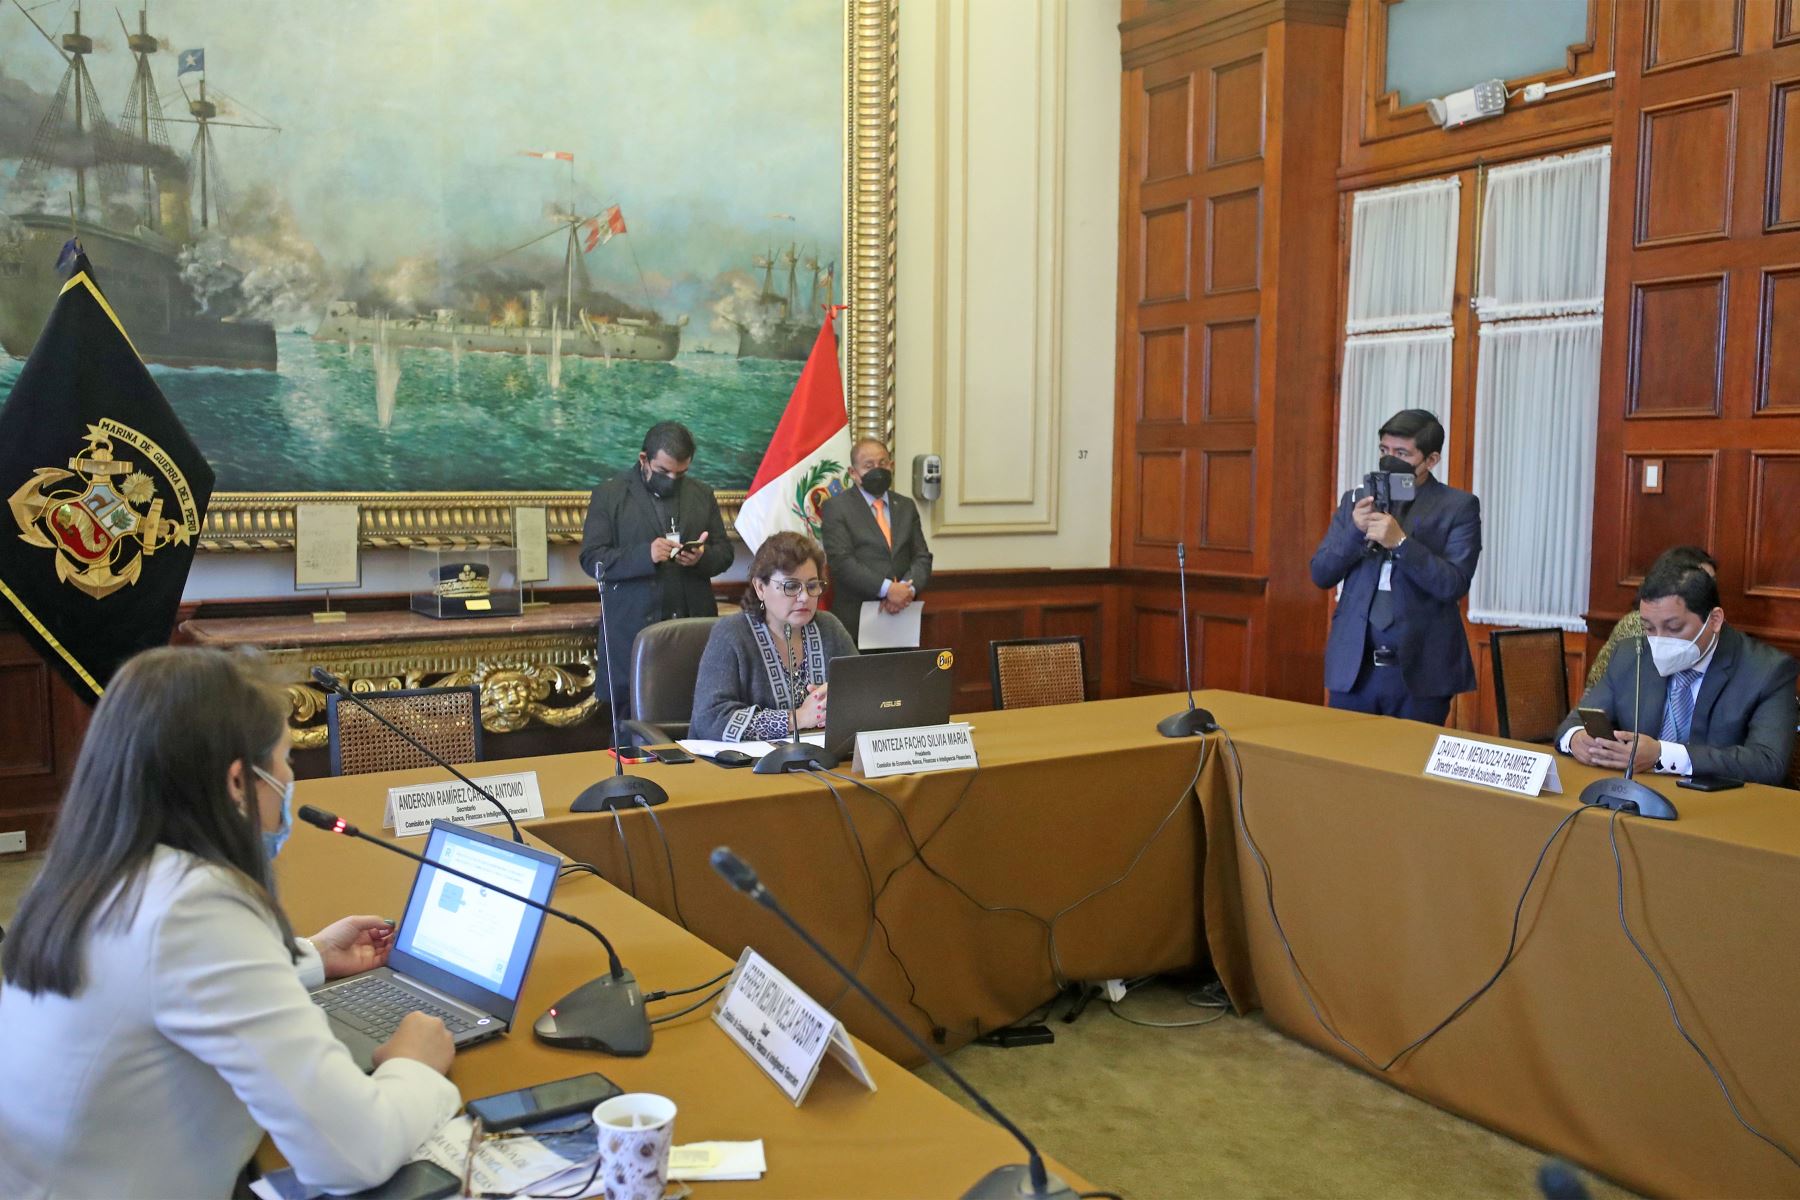 Congresista Silvia Monteza dirige la sesión en la comisión de Economía.
Foto: Congreso